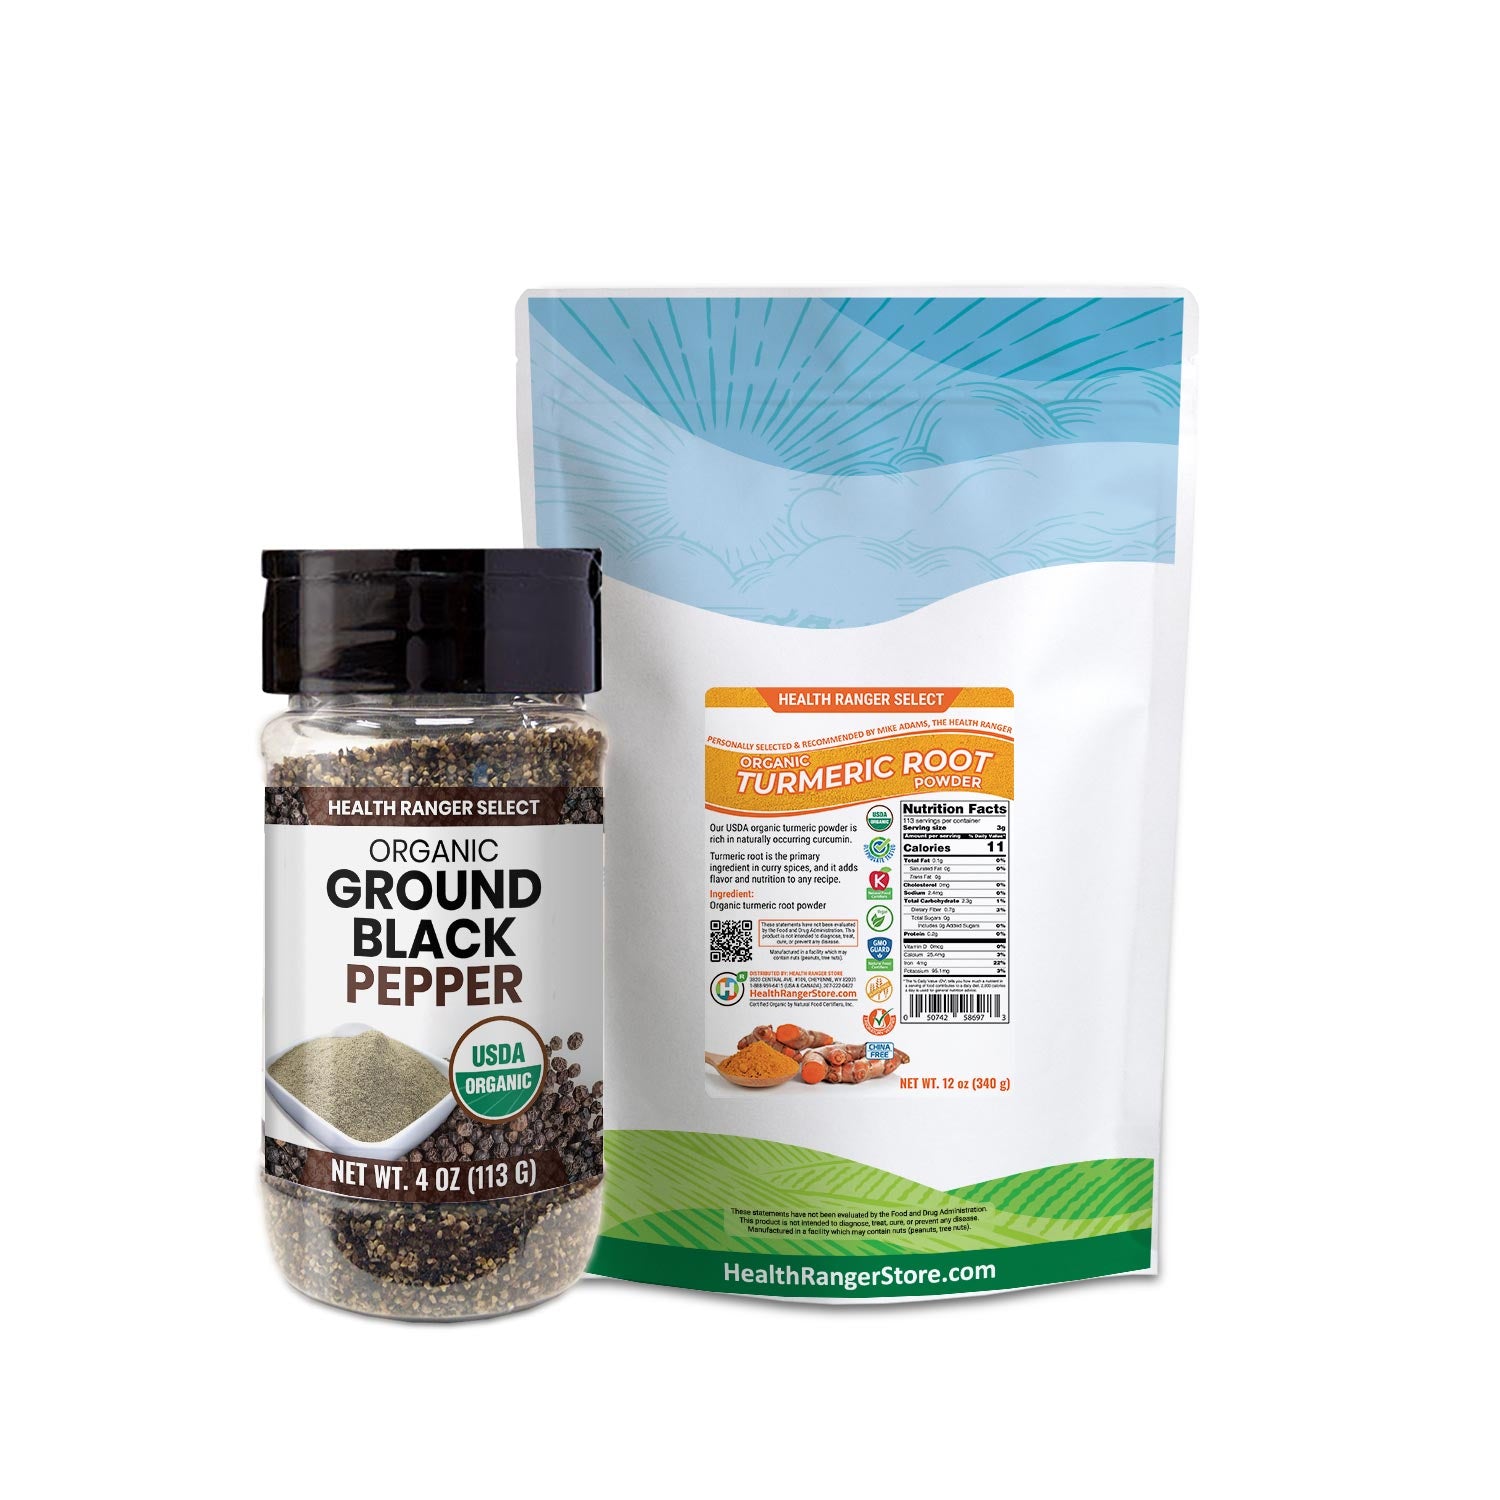 Organic Turmeric Root Powder + Organic Ground Black Pepper Combo Pack